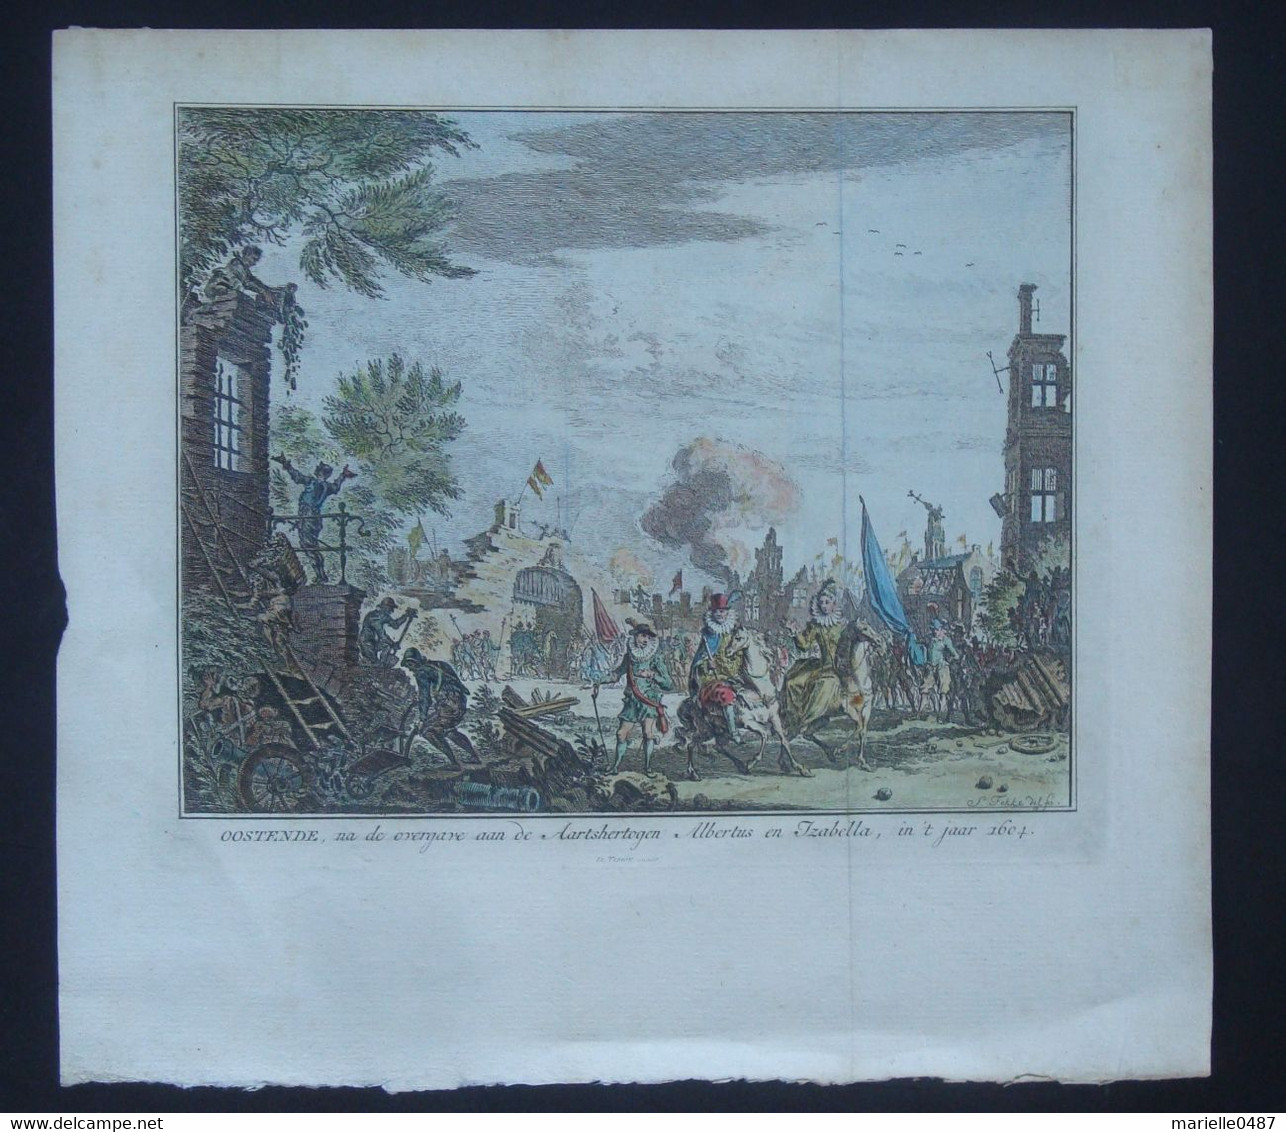 Oostende, Na De Overgare Aan De Aartshertogen Albertus En Izabella, In't Jaar 1604. - Antique